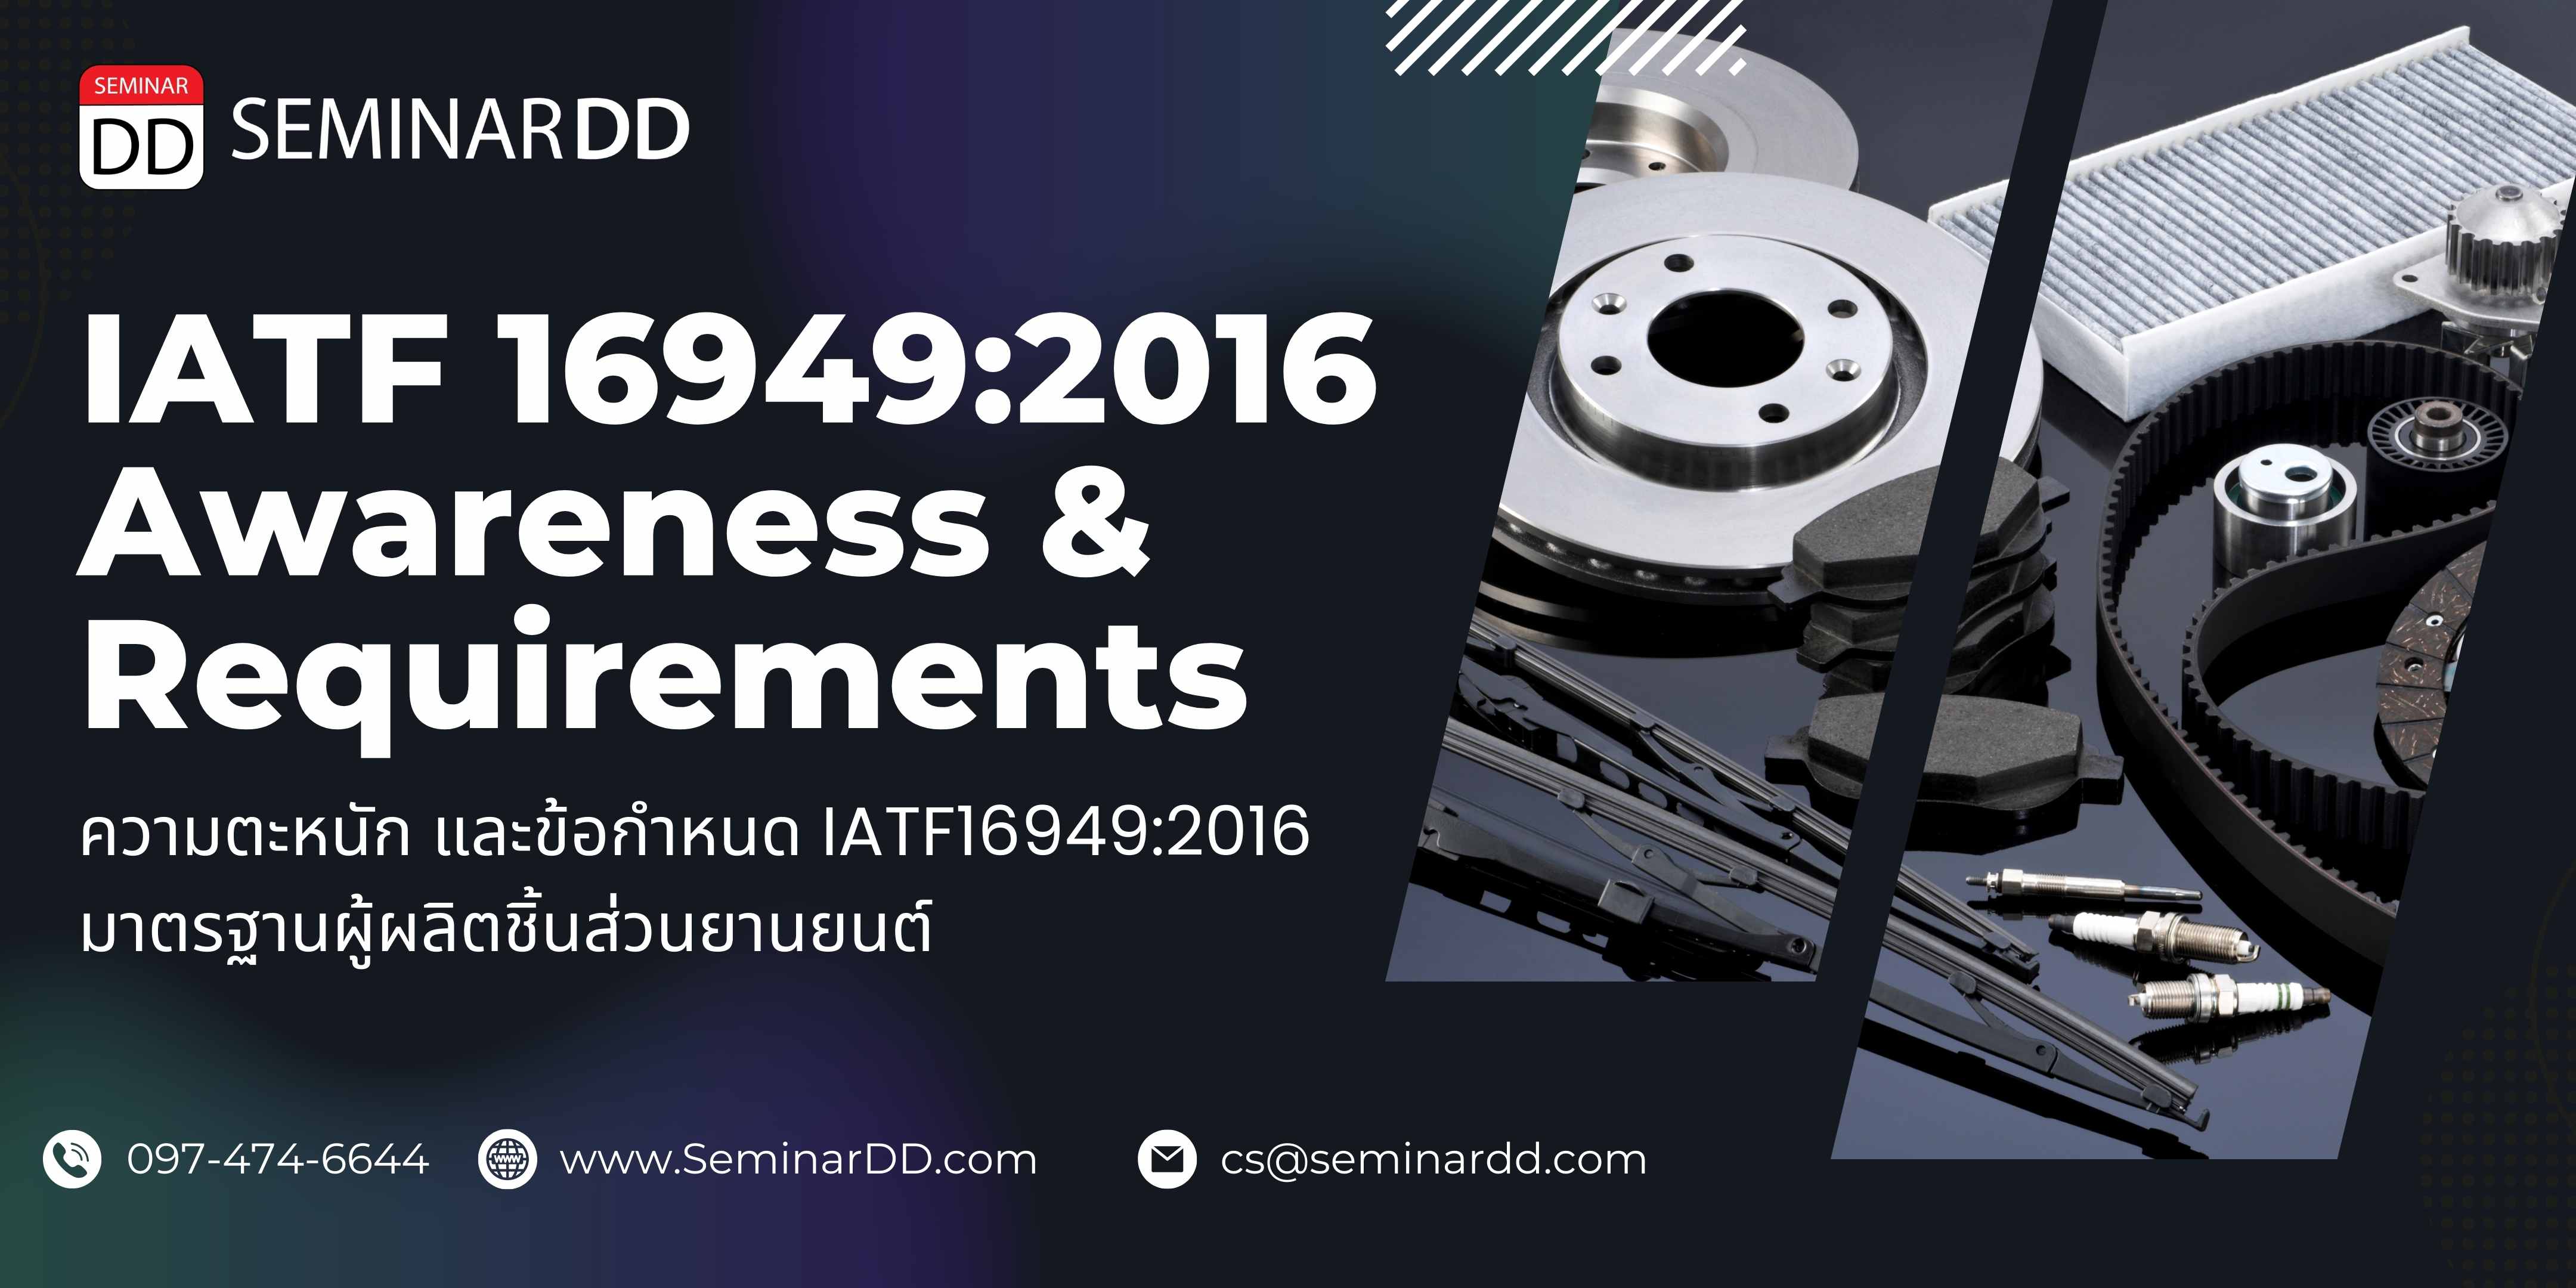 หลักสูตร ความตระหนัก และข้อกำหนด IATF 16949:2016  มาตรฐานผู้ผลิตชิ้นส่วนยานยนต์ IATF 16949:2016 Awareness and Requirements